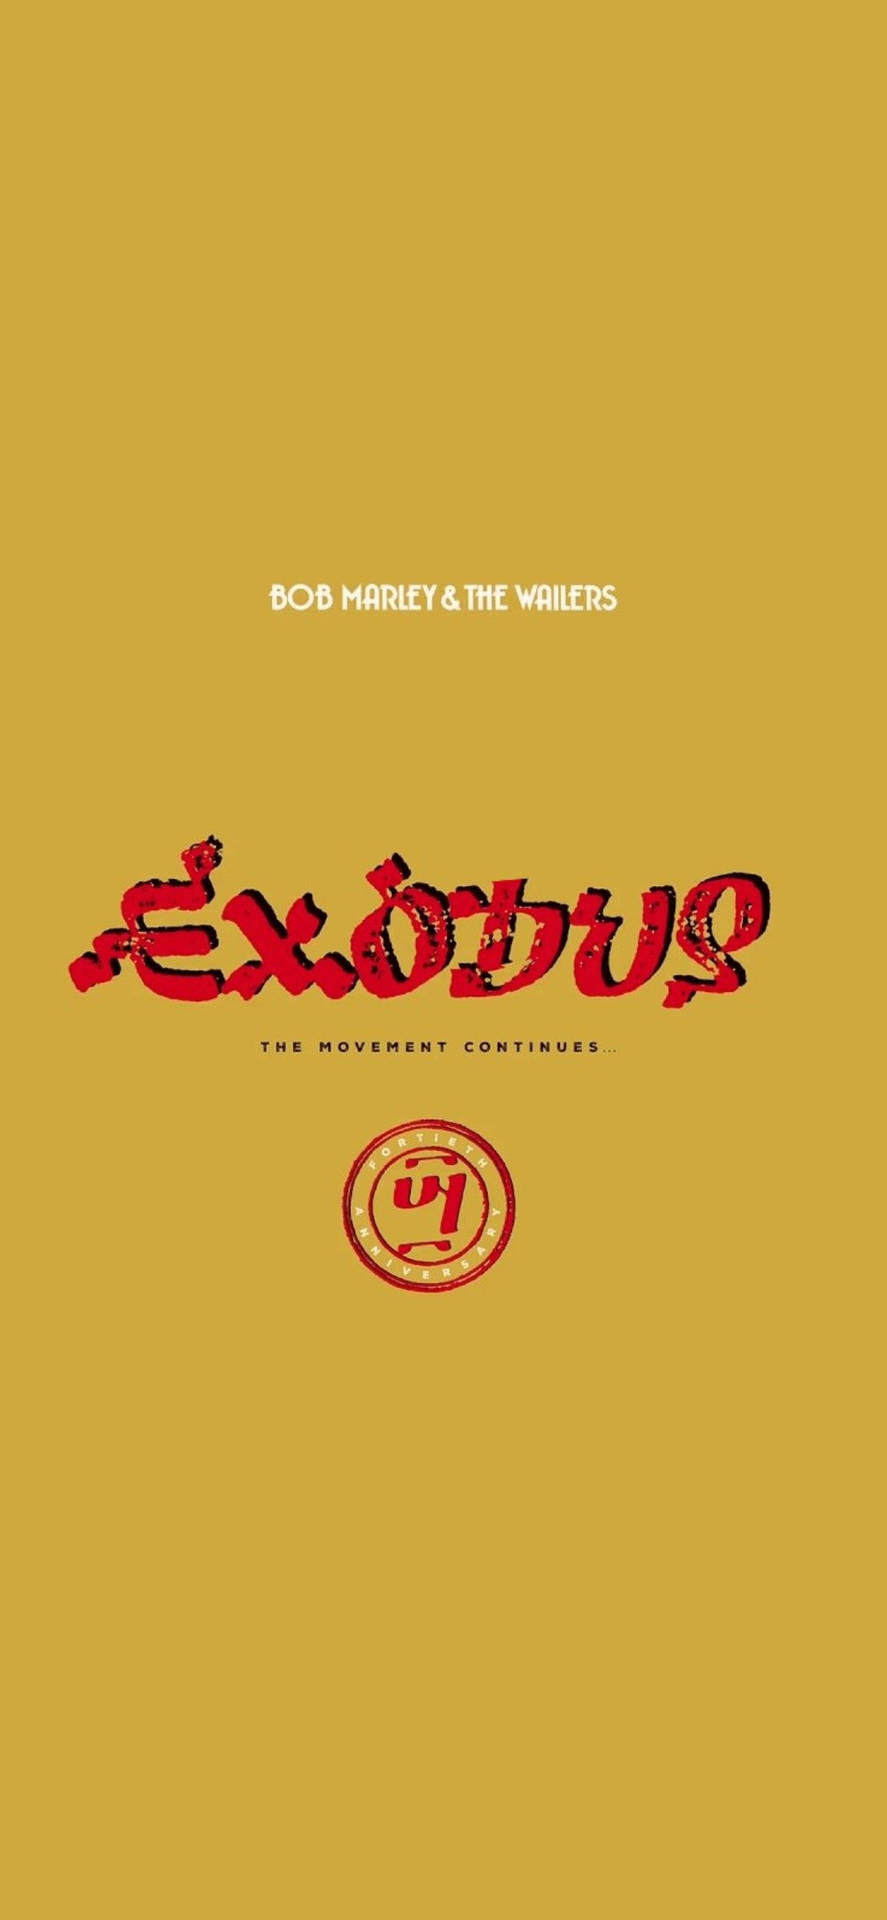 Bobmarley Und Die Wailers - Exodus Album Wallpaper